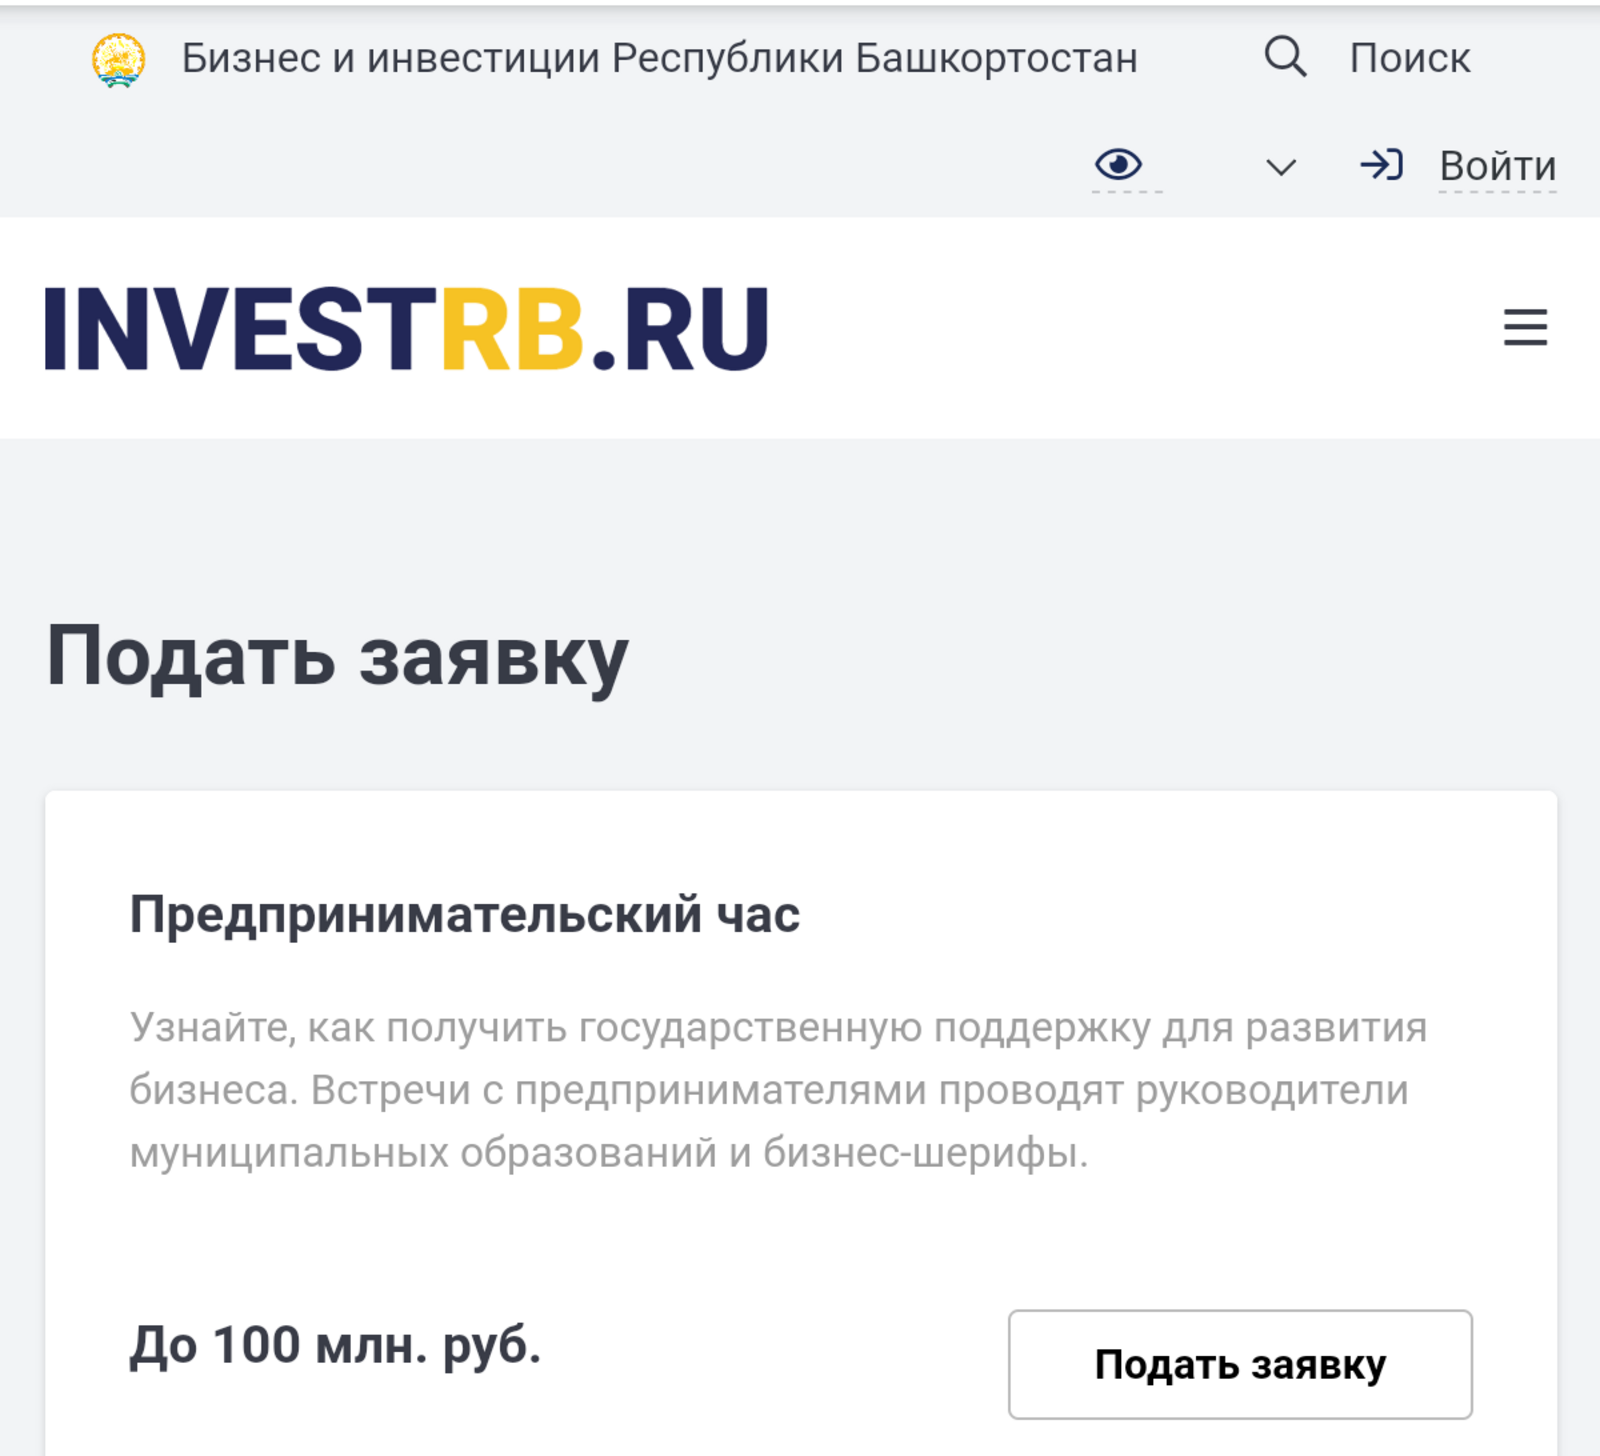 investrb.ru порталы туры эфирга чыга